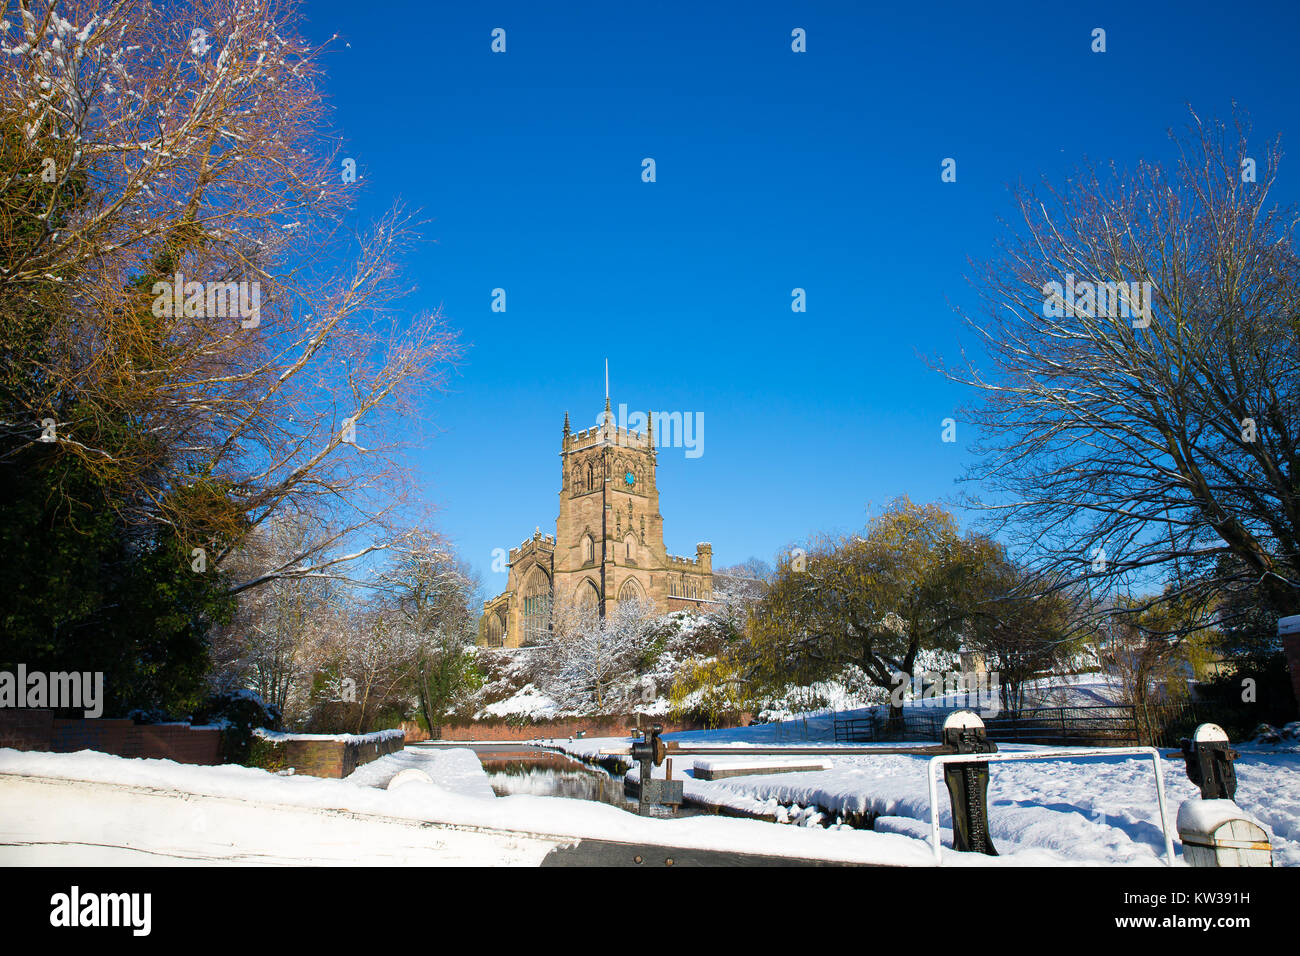 Inglese scena di neve; chiesa di St.Mary, Kidderminster, Regno Unito. Neve sul terreno, gloriosa inverno mattina di sole e cielo blu. Pittoresca scena d'inverno. Foto Stock